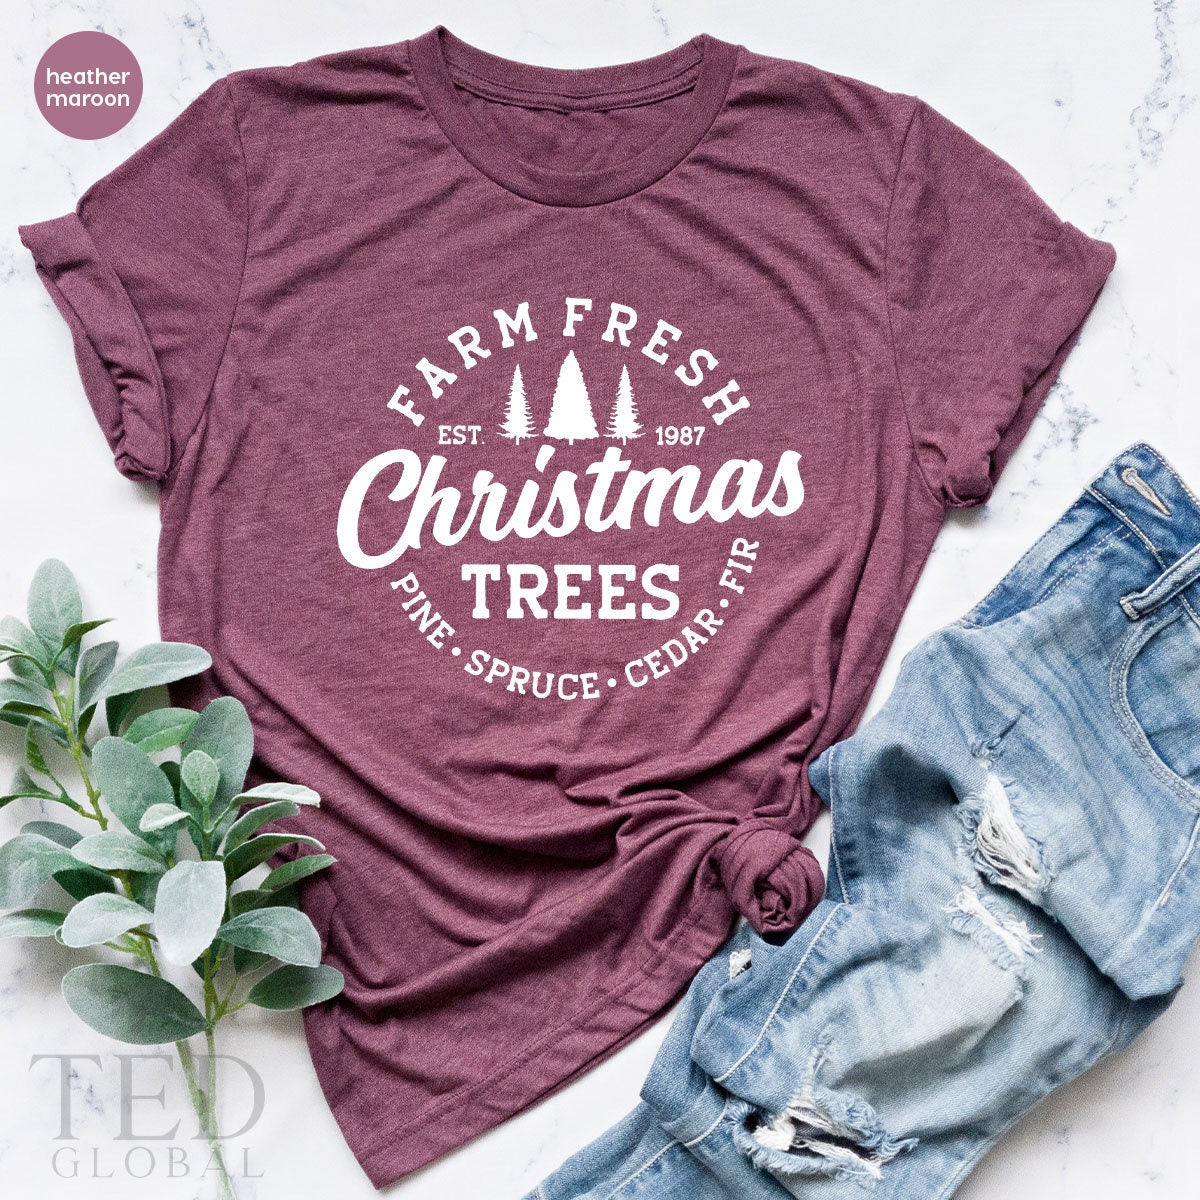 Cute Farm Fresh T-Shirt, Funny Christmas Trees T Shirt, Christmas Family Tee, Pine Spruce Cedar Fır Shirts, Xmas TShirt, Gift For Christmas - Fastdeliverytees.com